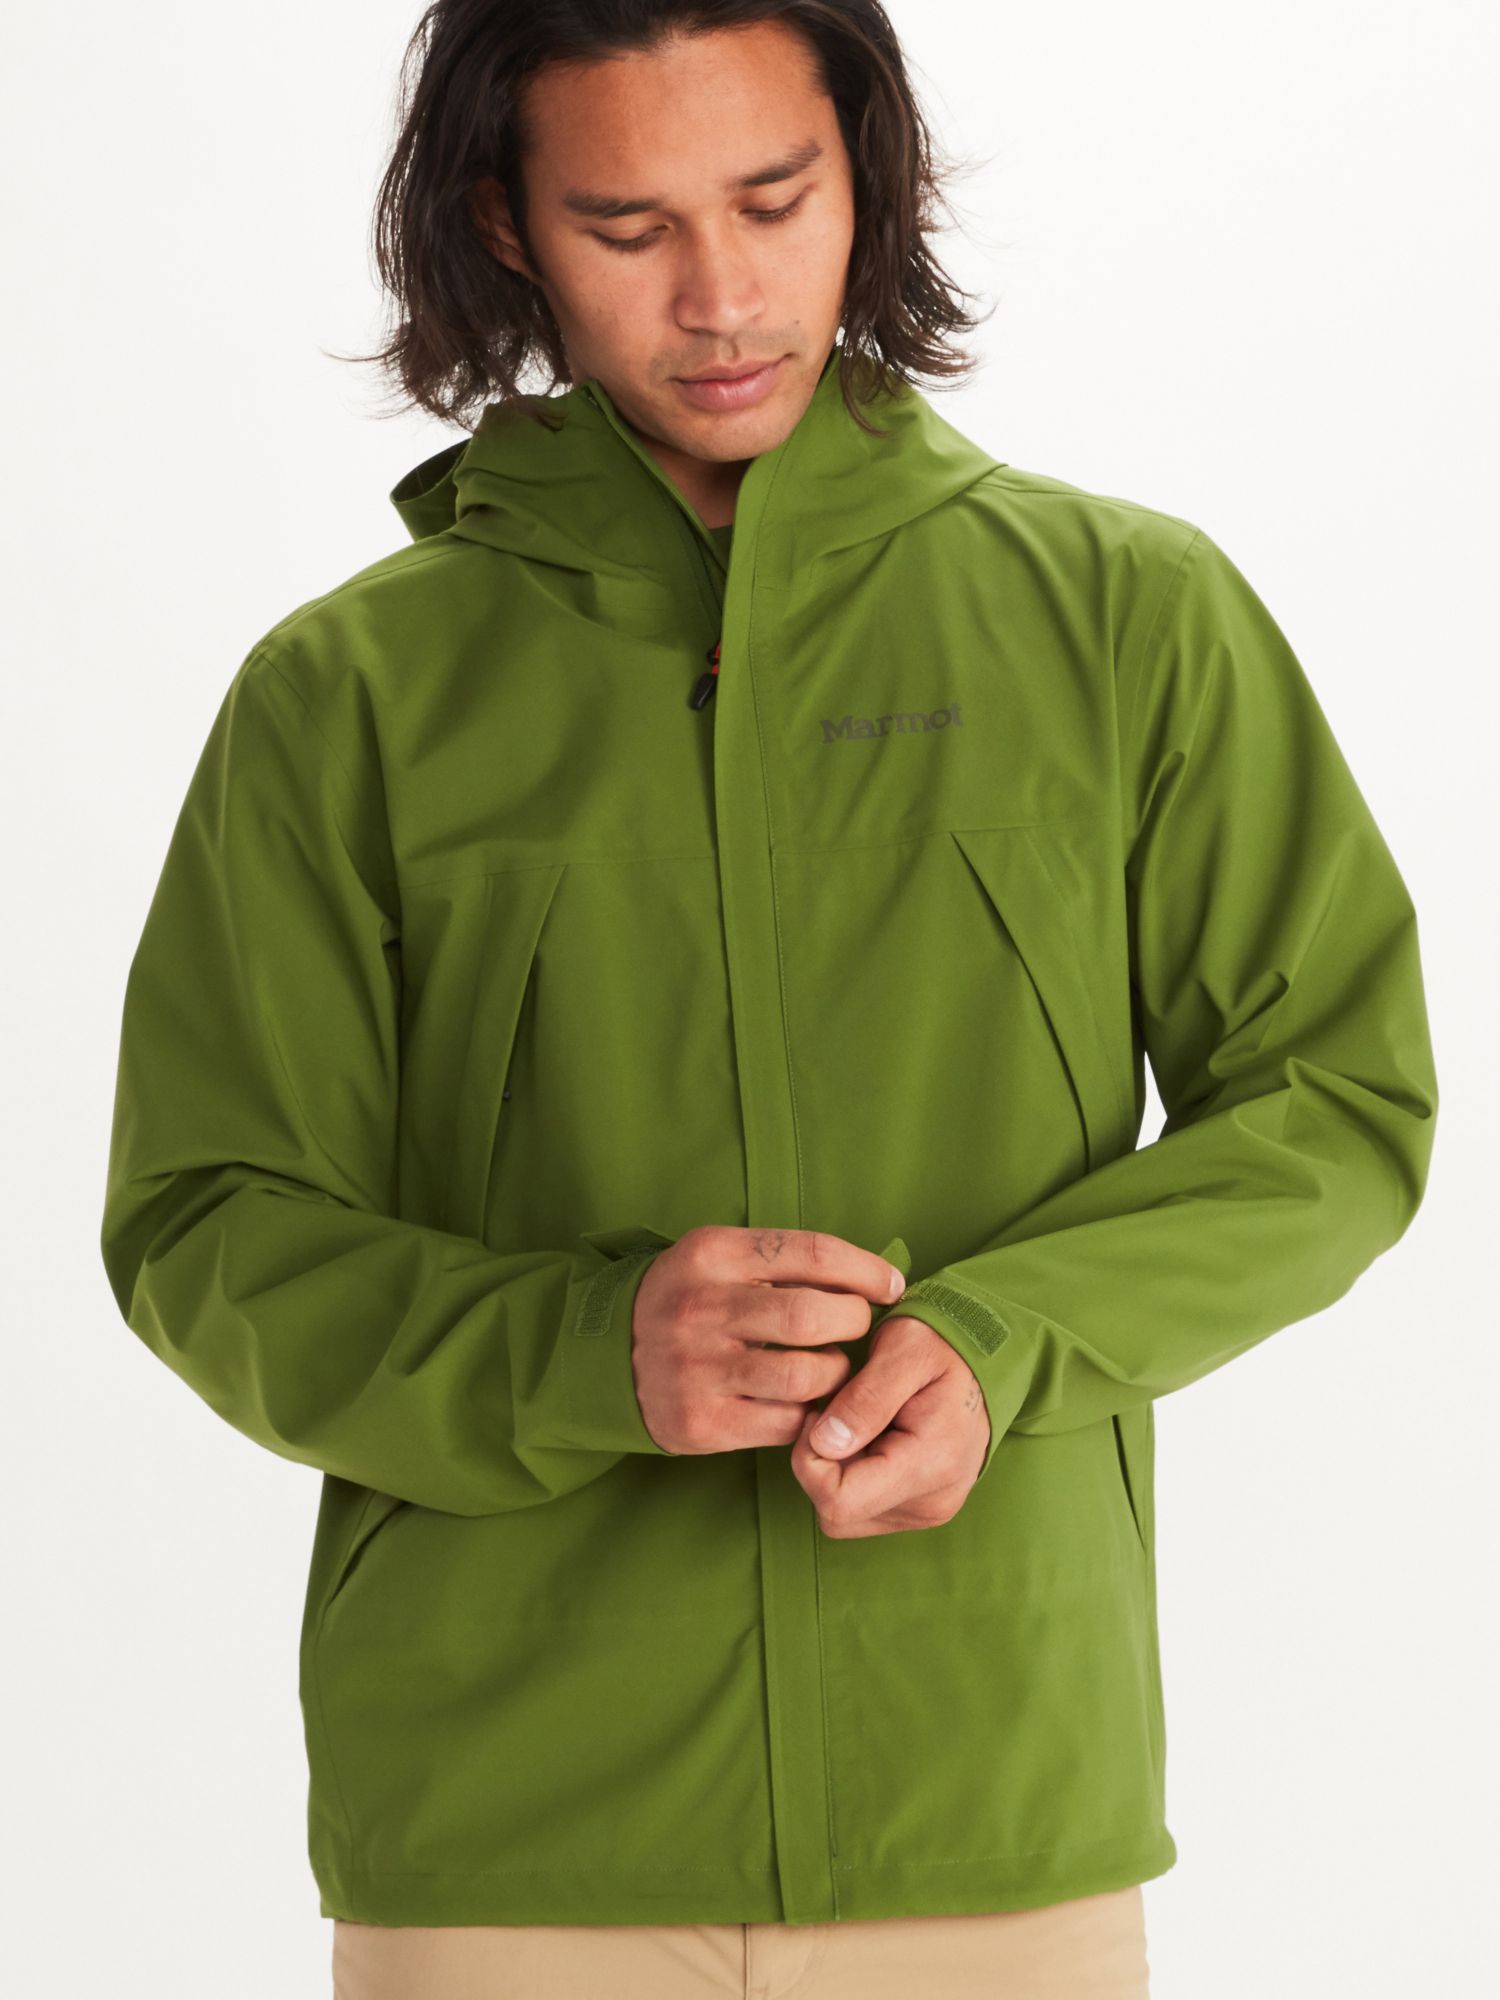 Men's PreCip® Eco Pro Jacket